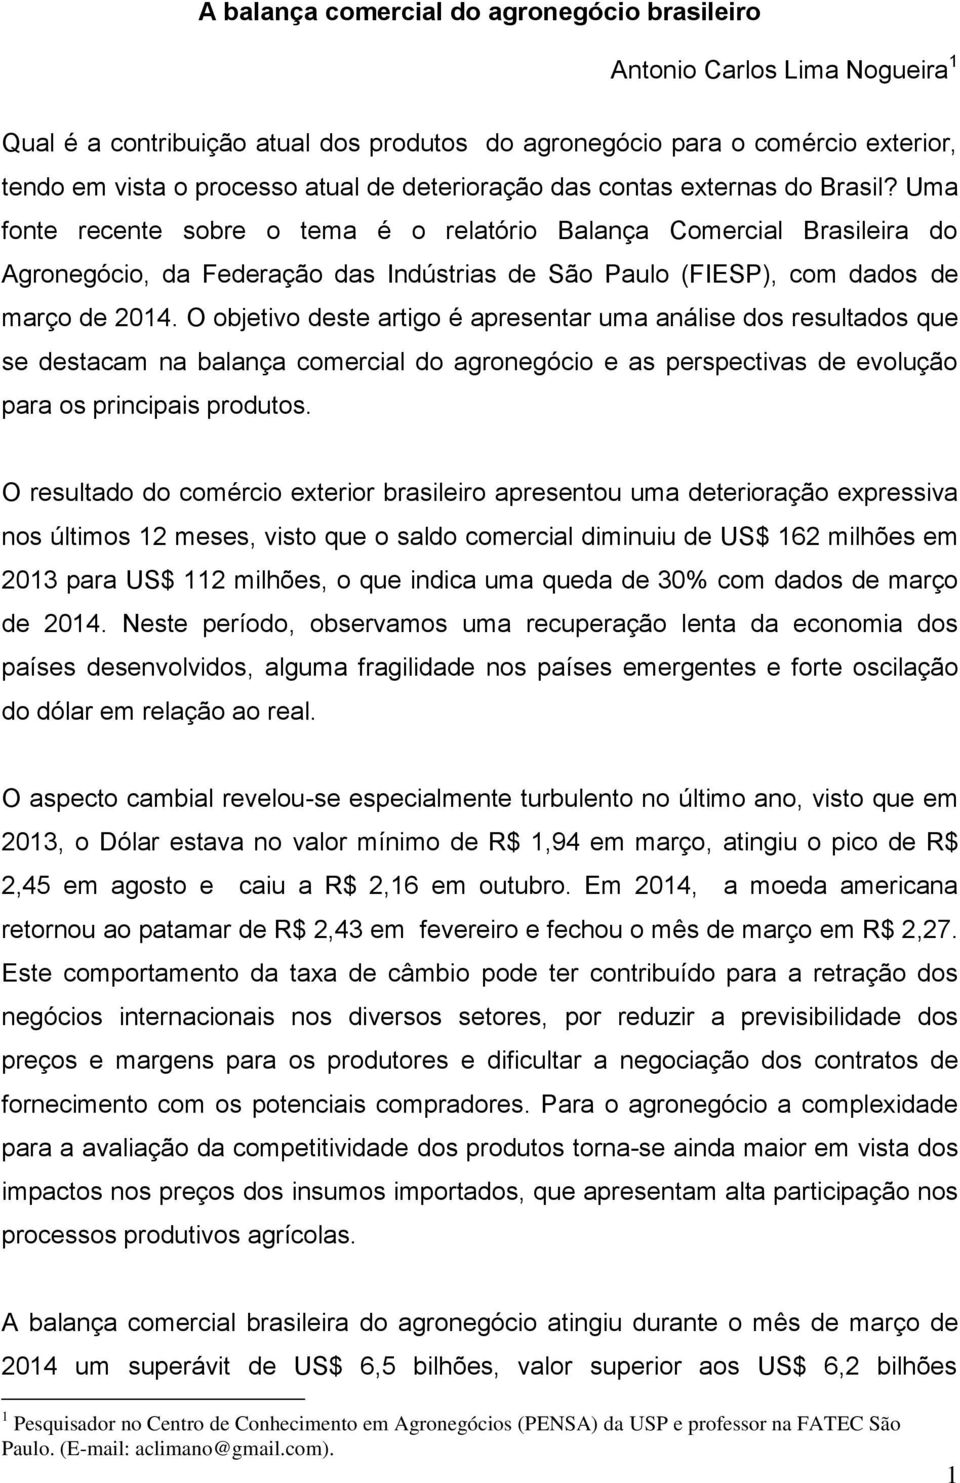 Uma fonte recente sobre o tema é o relatório Balança Comercial Brasileira do Agronegócio, da Federação das Indústrias de São Paulo (FIESP), com dados de março de 2014.